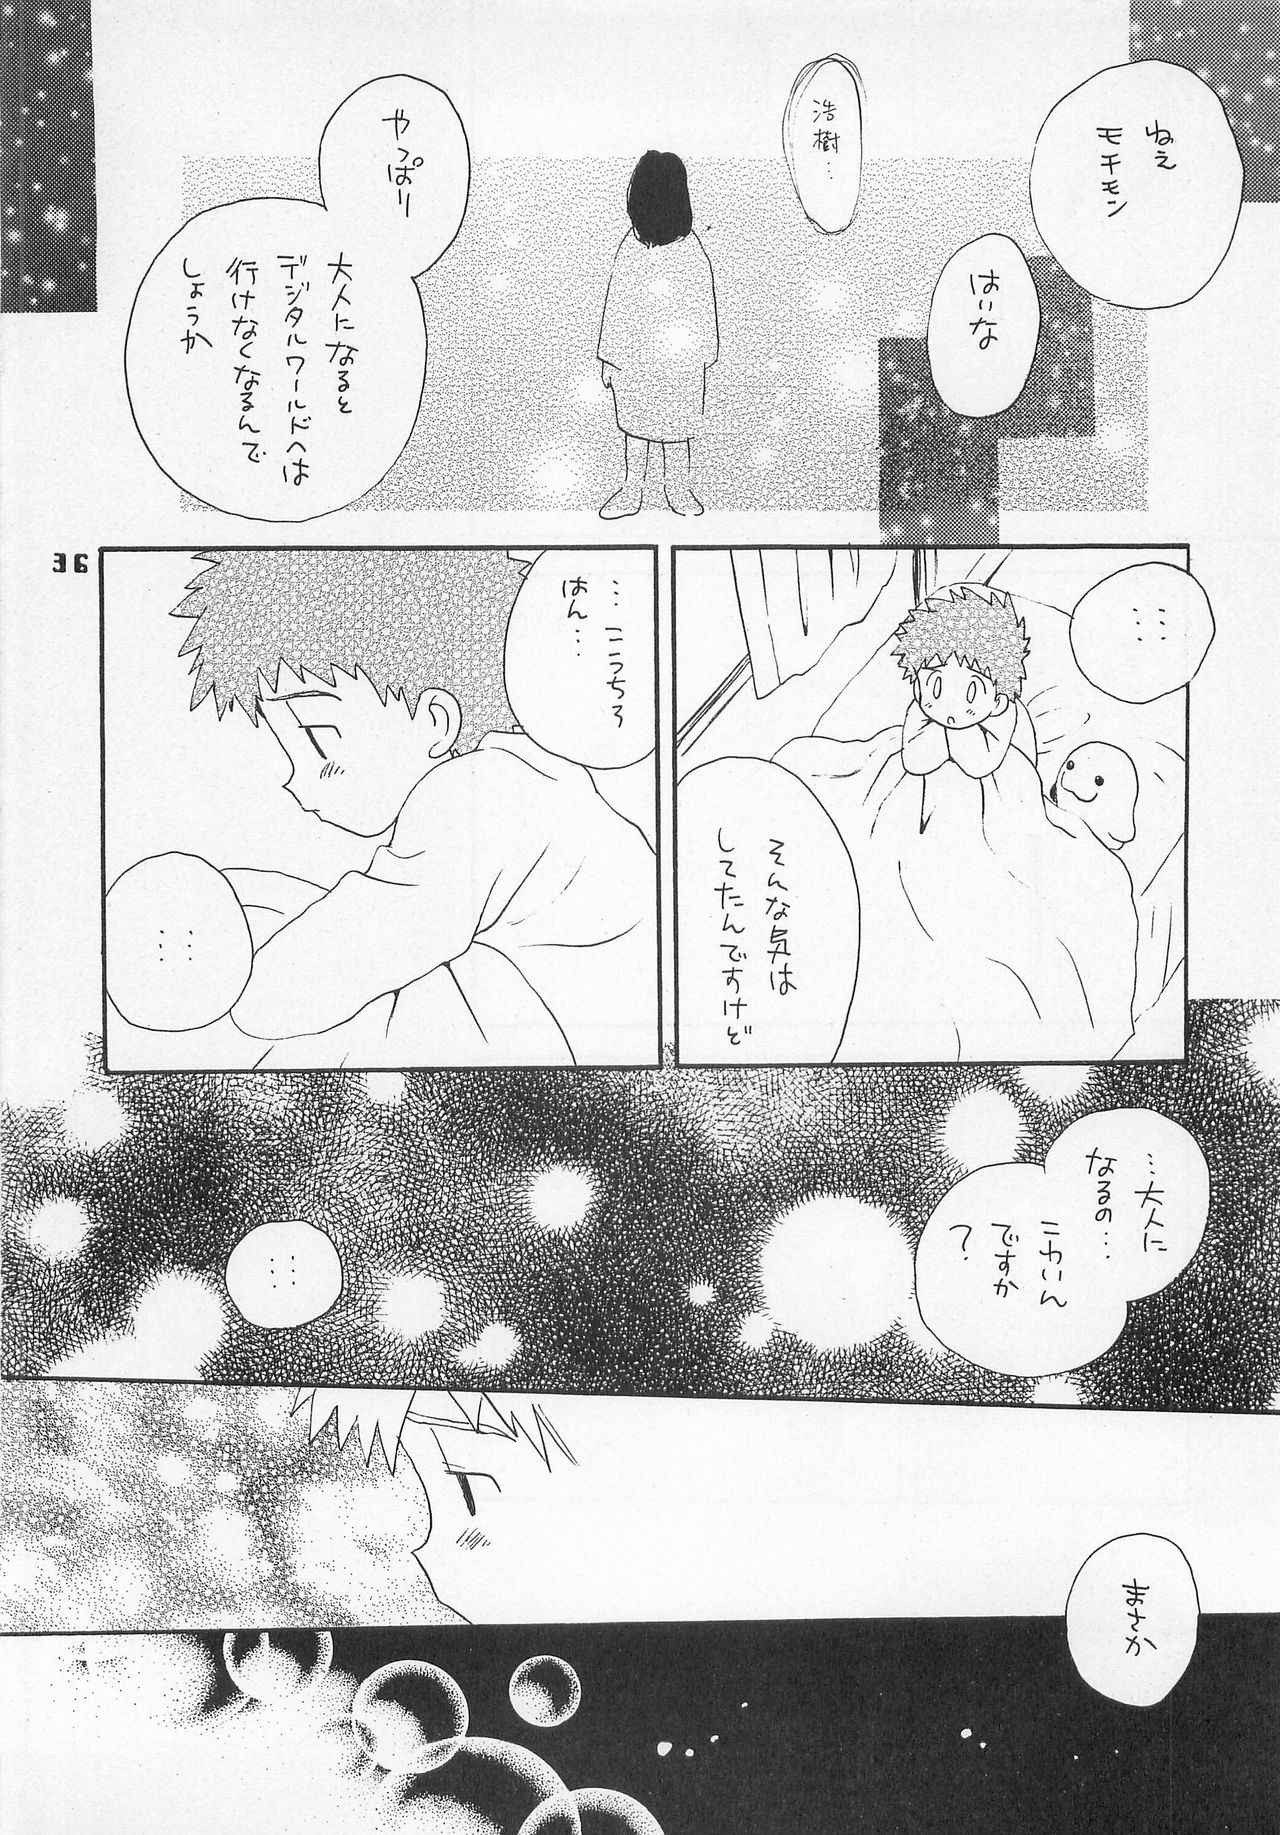 (HaruCC6) [Haniwa Mania, Kuru Guru DNA (Pon Takahanada, Hoshiai Hiro)] Jogress Daihyakka (Digimon Adventure 02) page 35 full